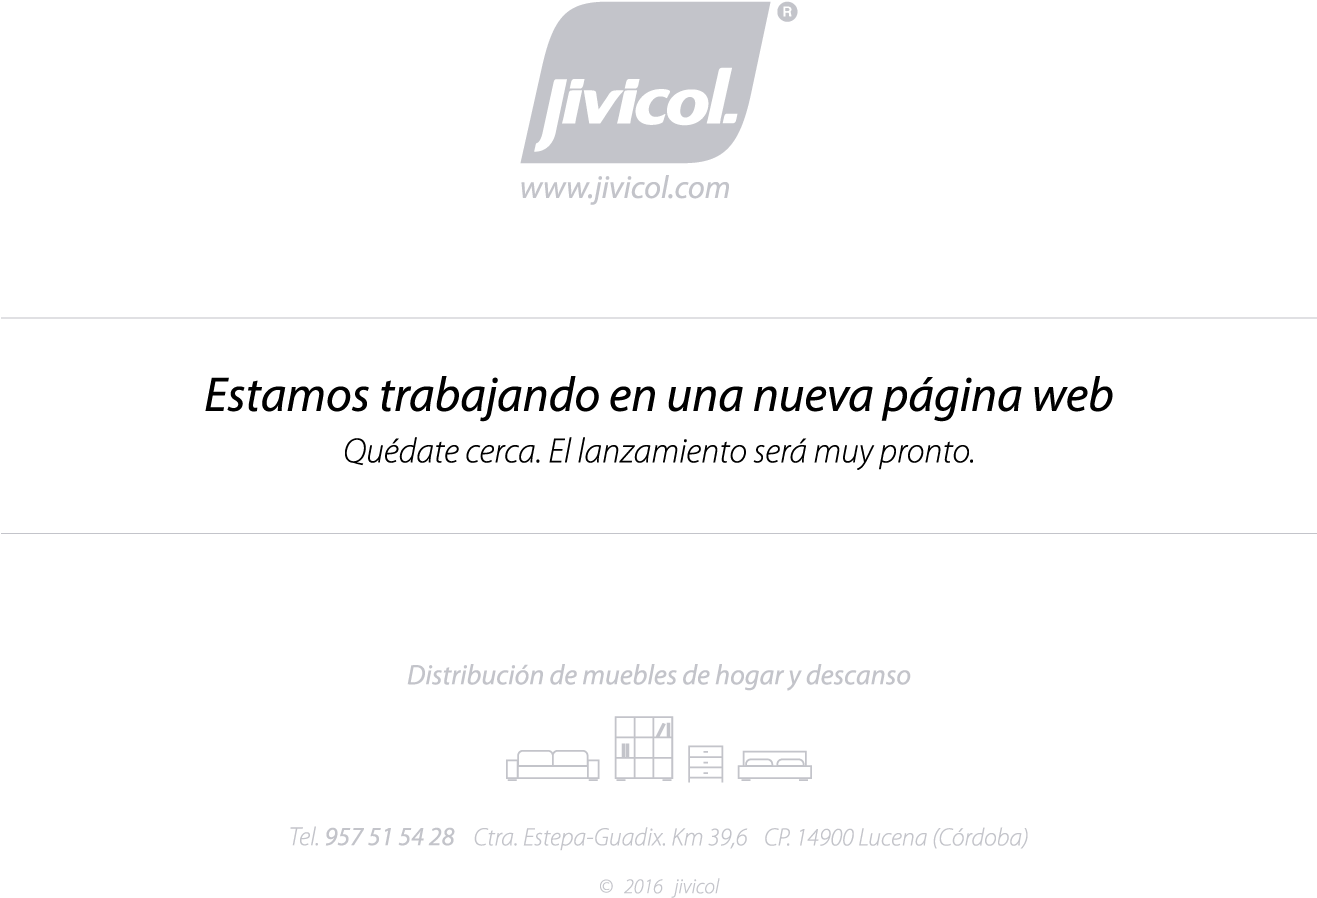 Jivicol Pag En Construccion - Informe De Pasantia Iutirla (1820x1024), Png Download